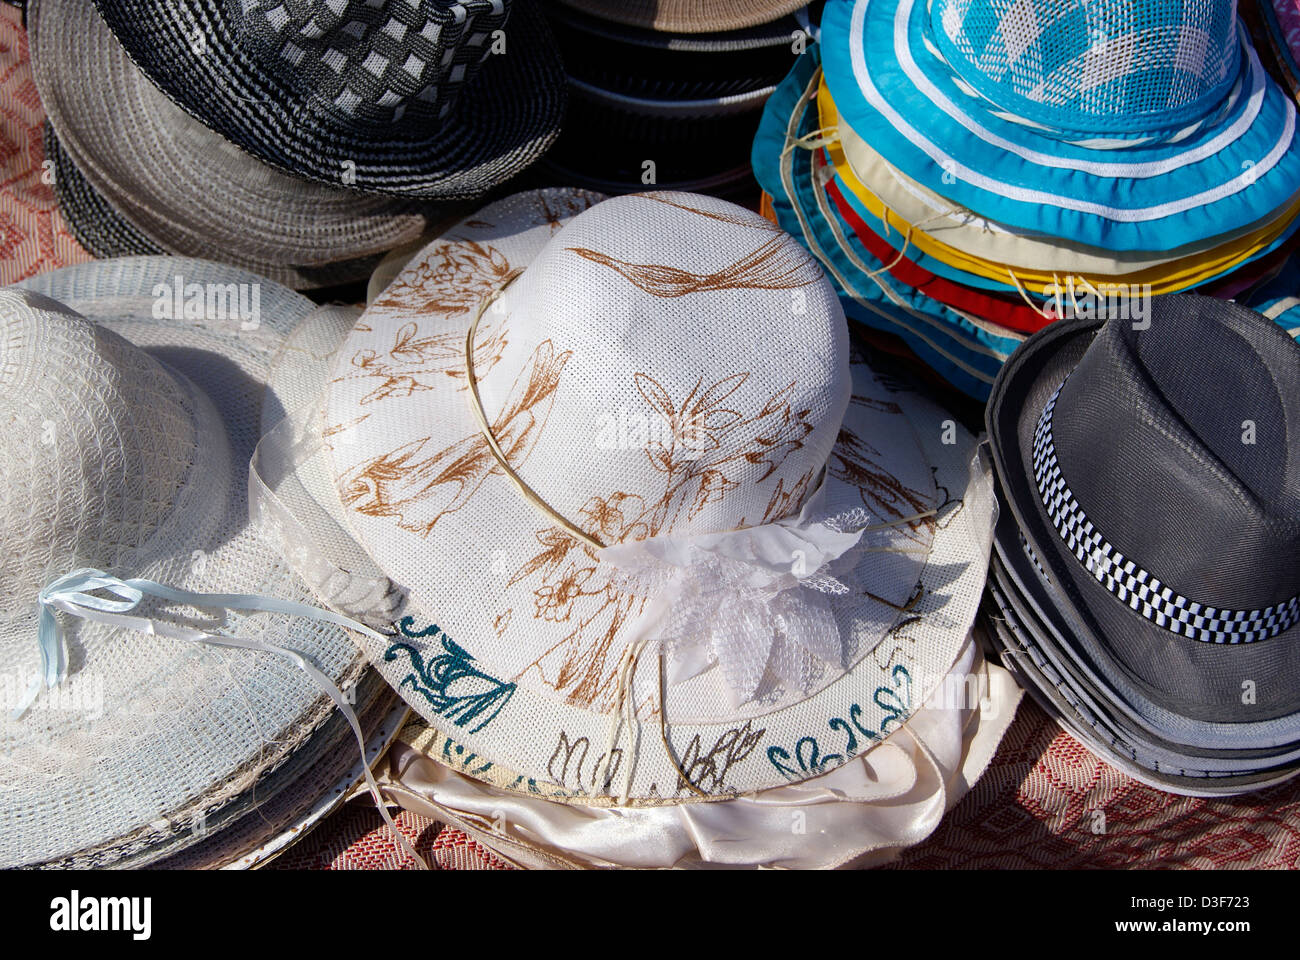 Hat Shop à Goa Inde afficher différents types de chapeaux ronds Photo Stock  - Alamy